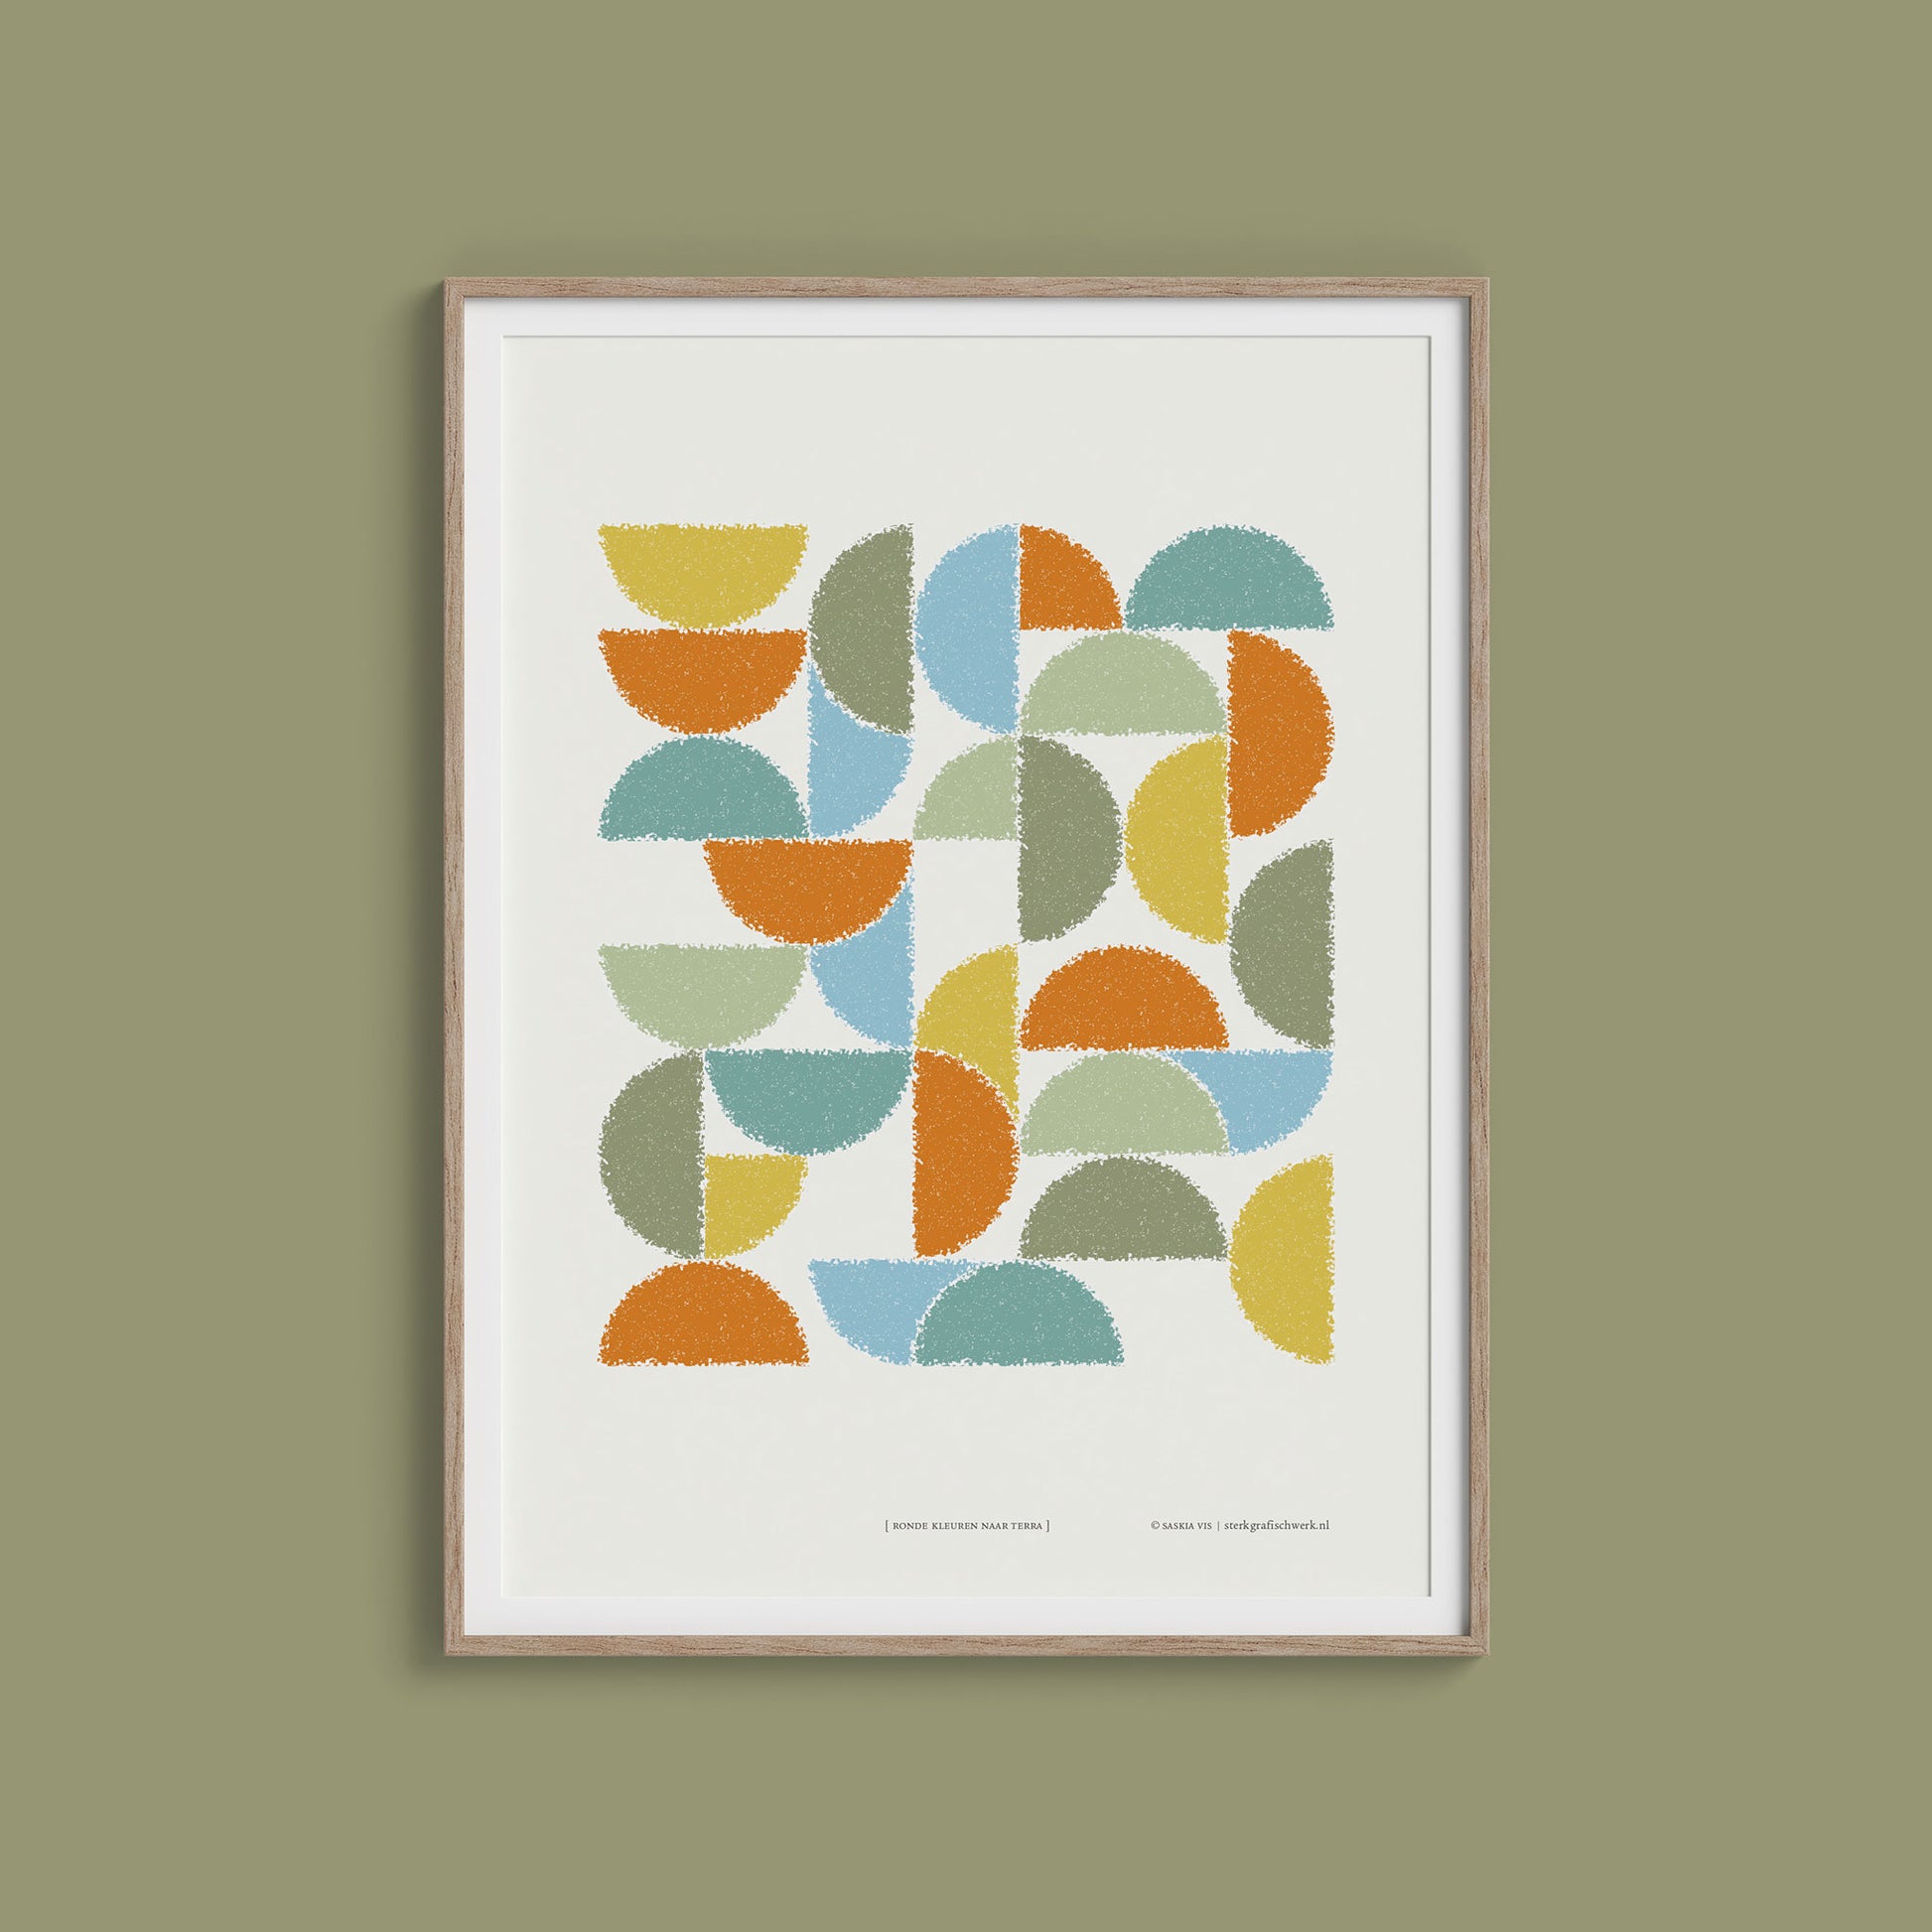 Productafbeelding poster "ronde kleuren naar terra" in een houten lijst hangend aan een olijfgroen gekleurde wand 